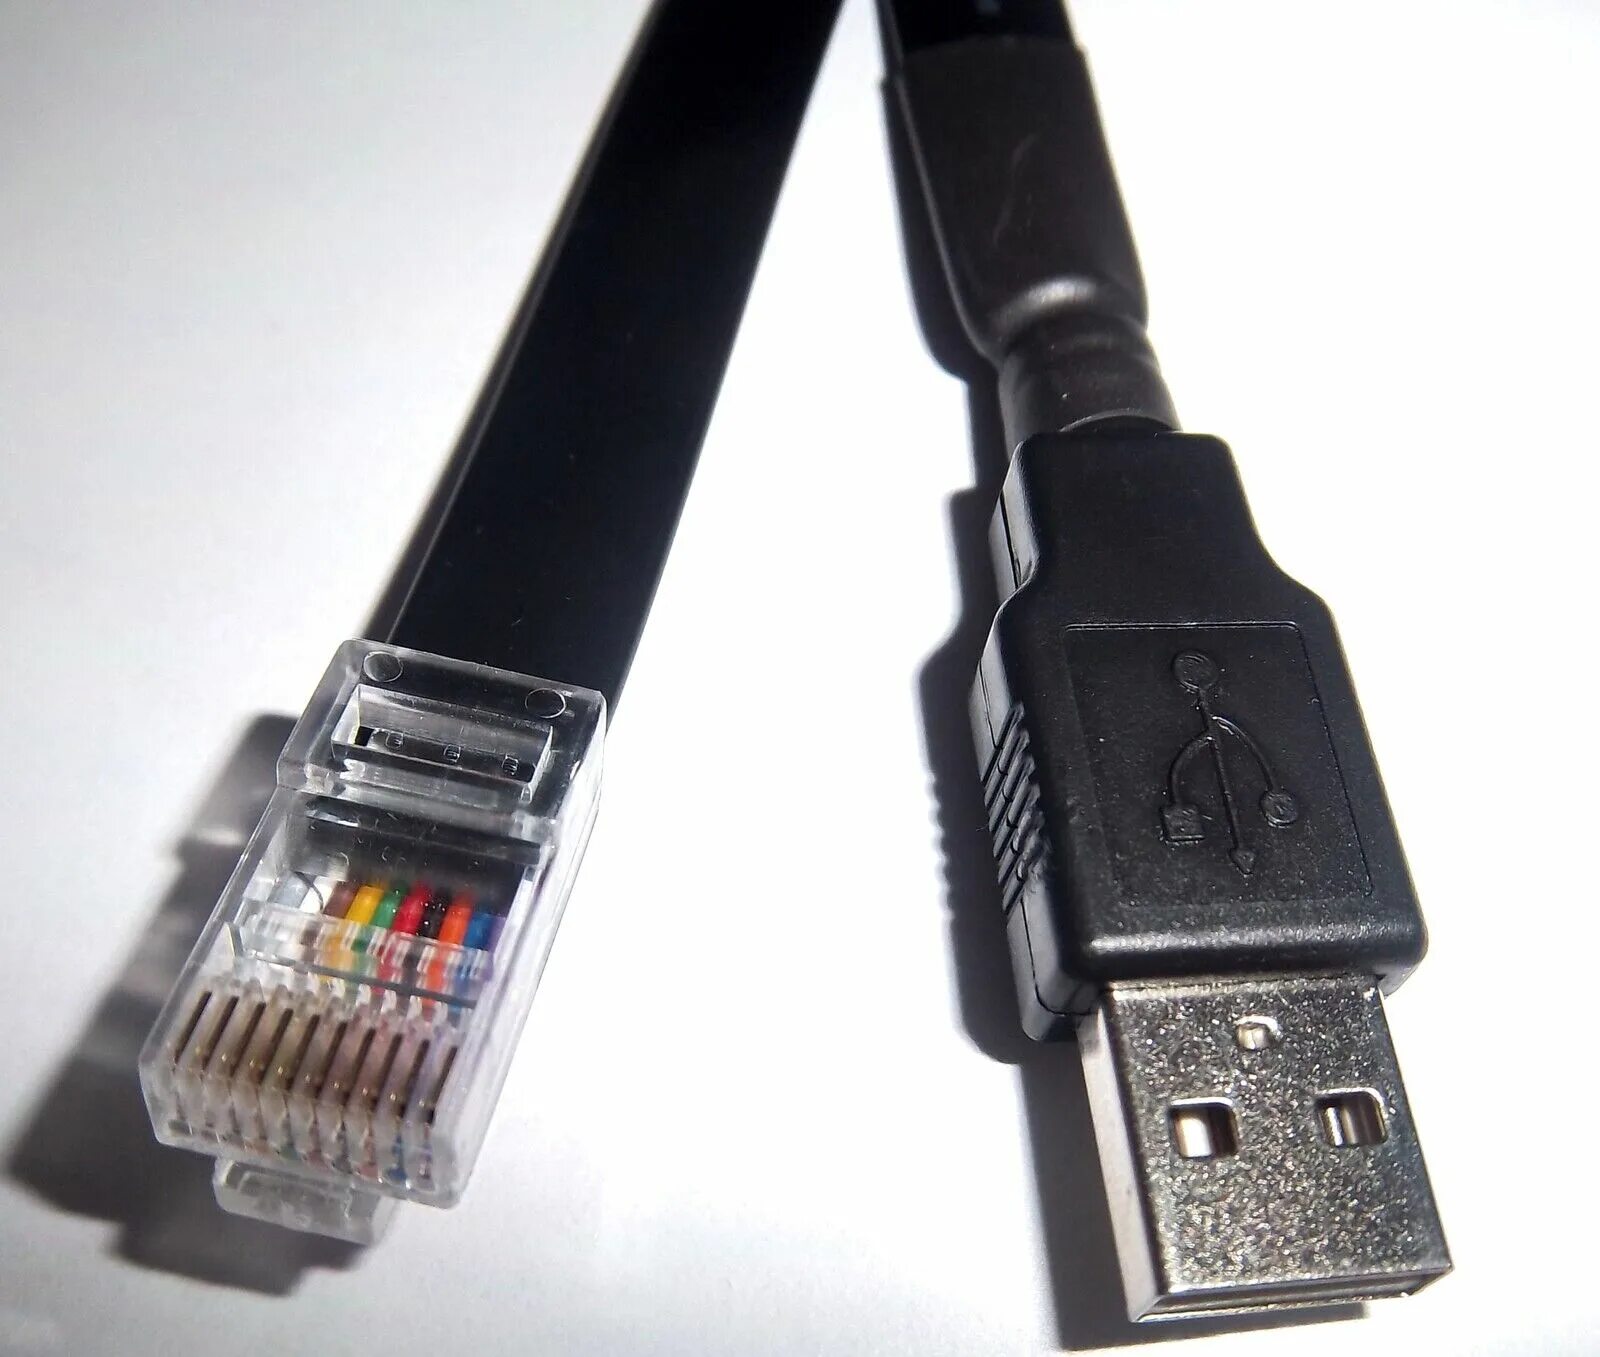 Apc usb rj45 pinout. APC ups rj50 – USB. Rj50 USB APC. APC USB rj45 ap9827. Кабель USB rj50 для ИБП APC.